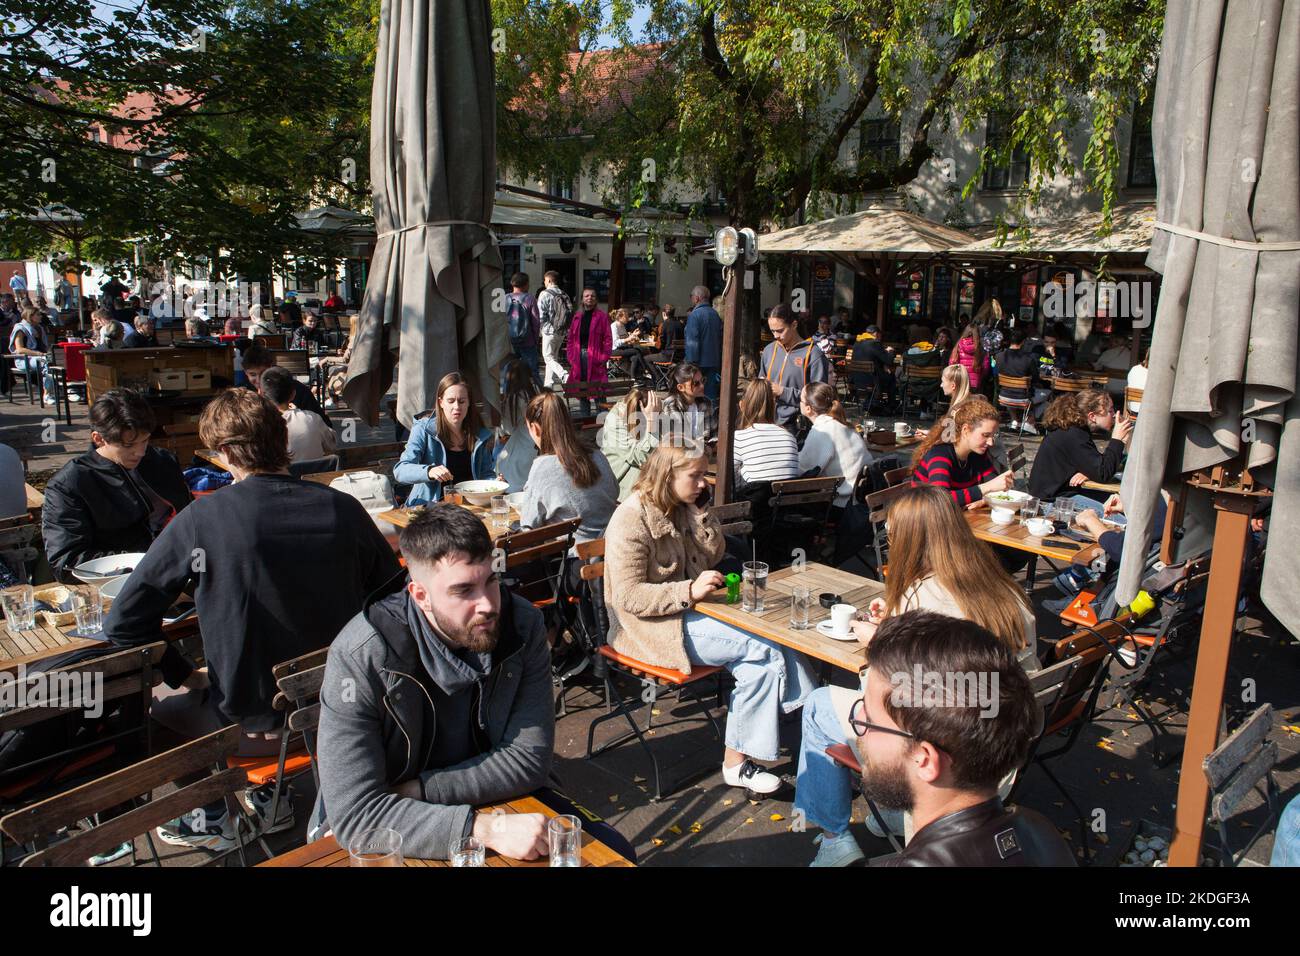 Cafes and bars beside the Ljubljanica River in Ljubjlana, Slovenia Stock Photo